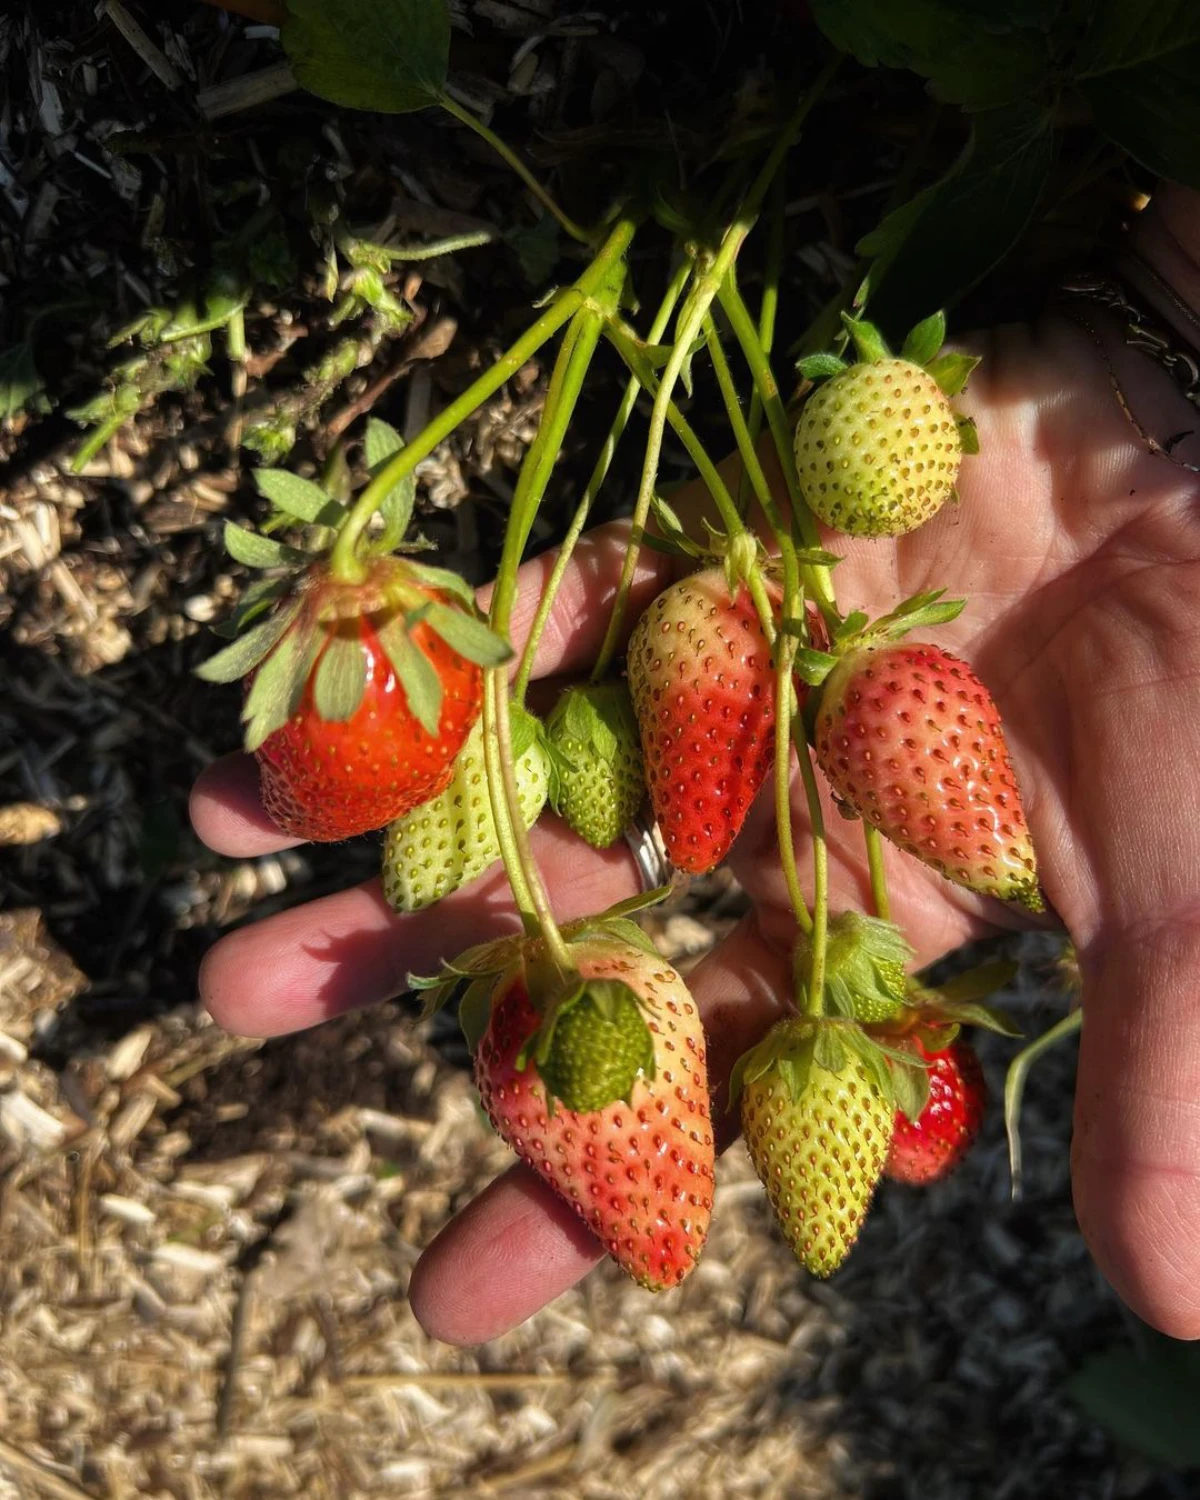 comment eviter que les fraises ne touchent pas le sol